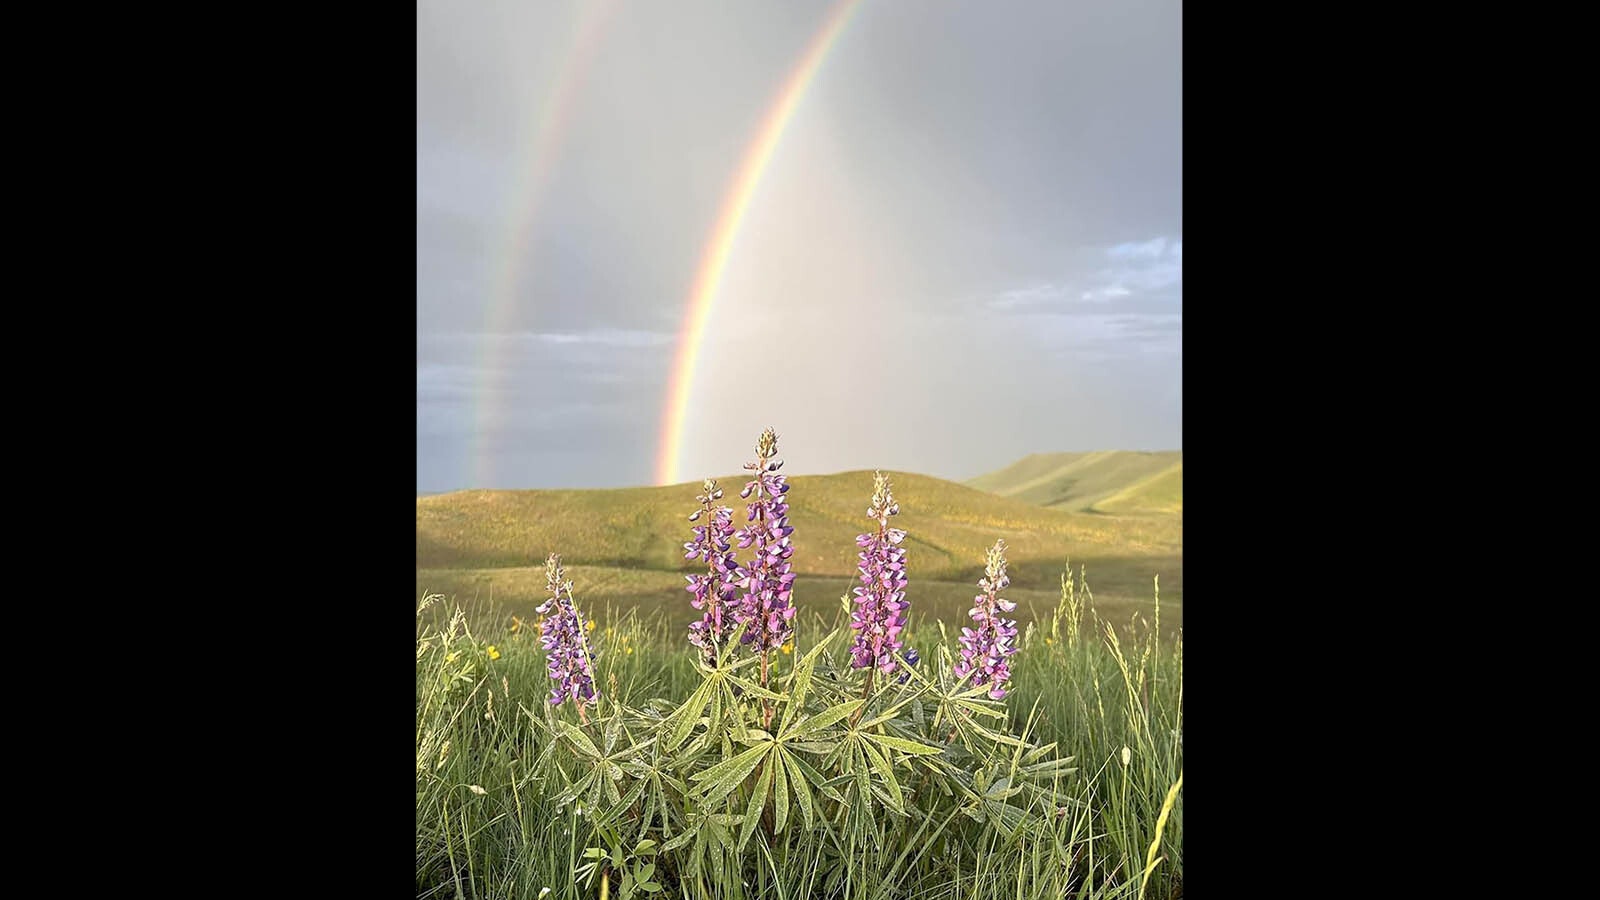 A double rainbow over the Bighorns.